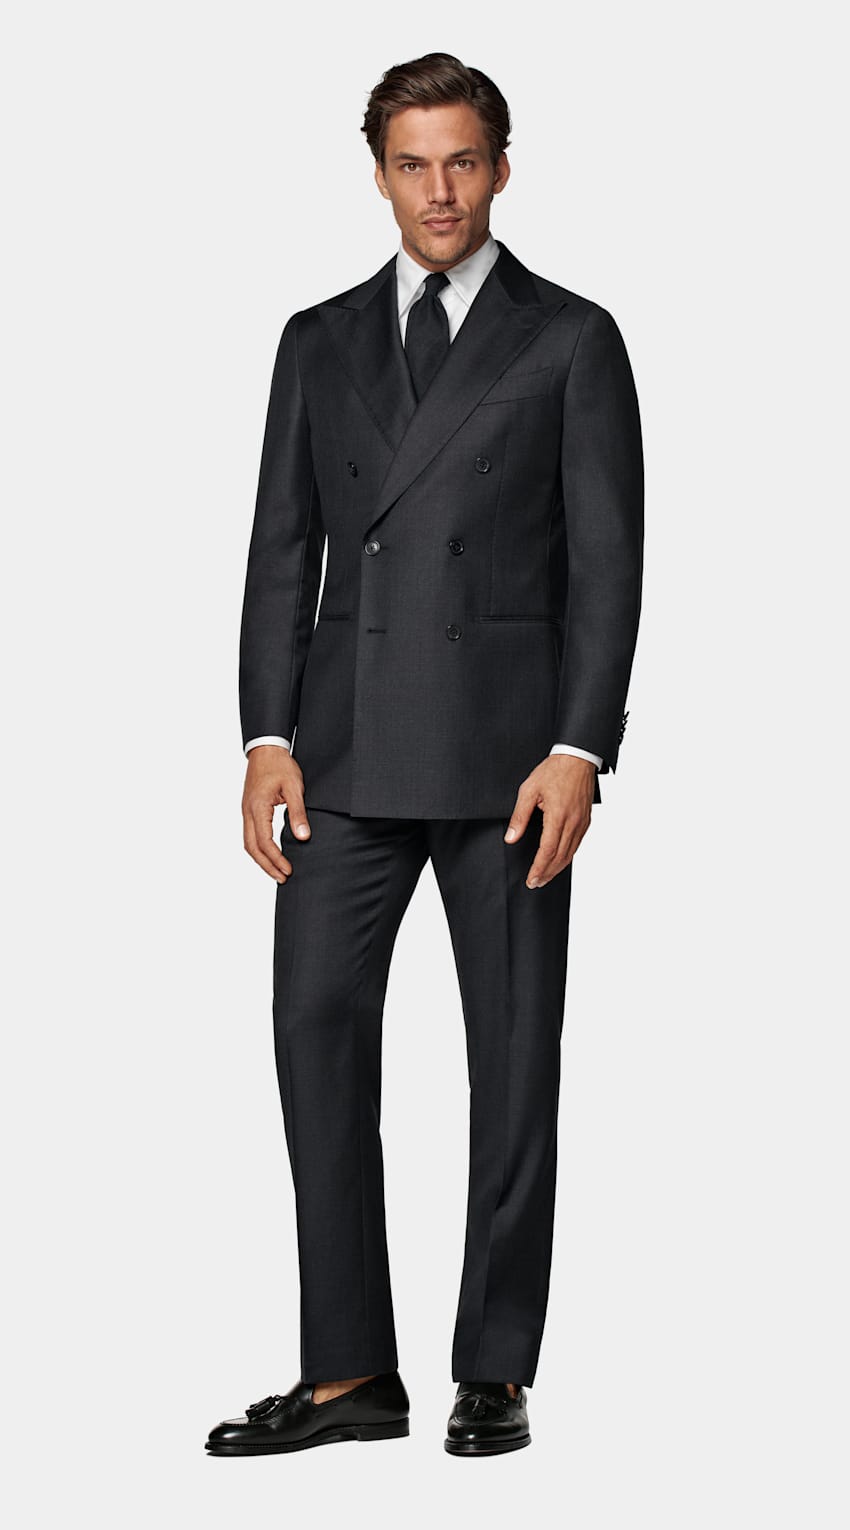 SUITSUPPLY Ren S110's-ull från Vitale Barberis Canonico, Italien Havana mörkgrå kostym med tailored fit